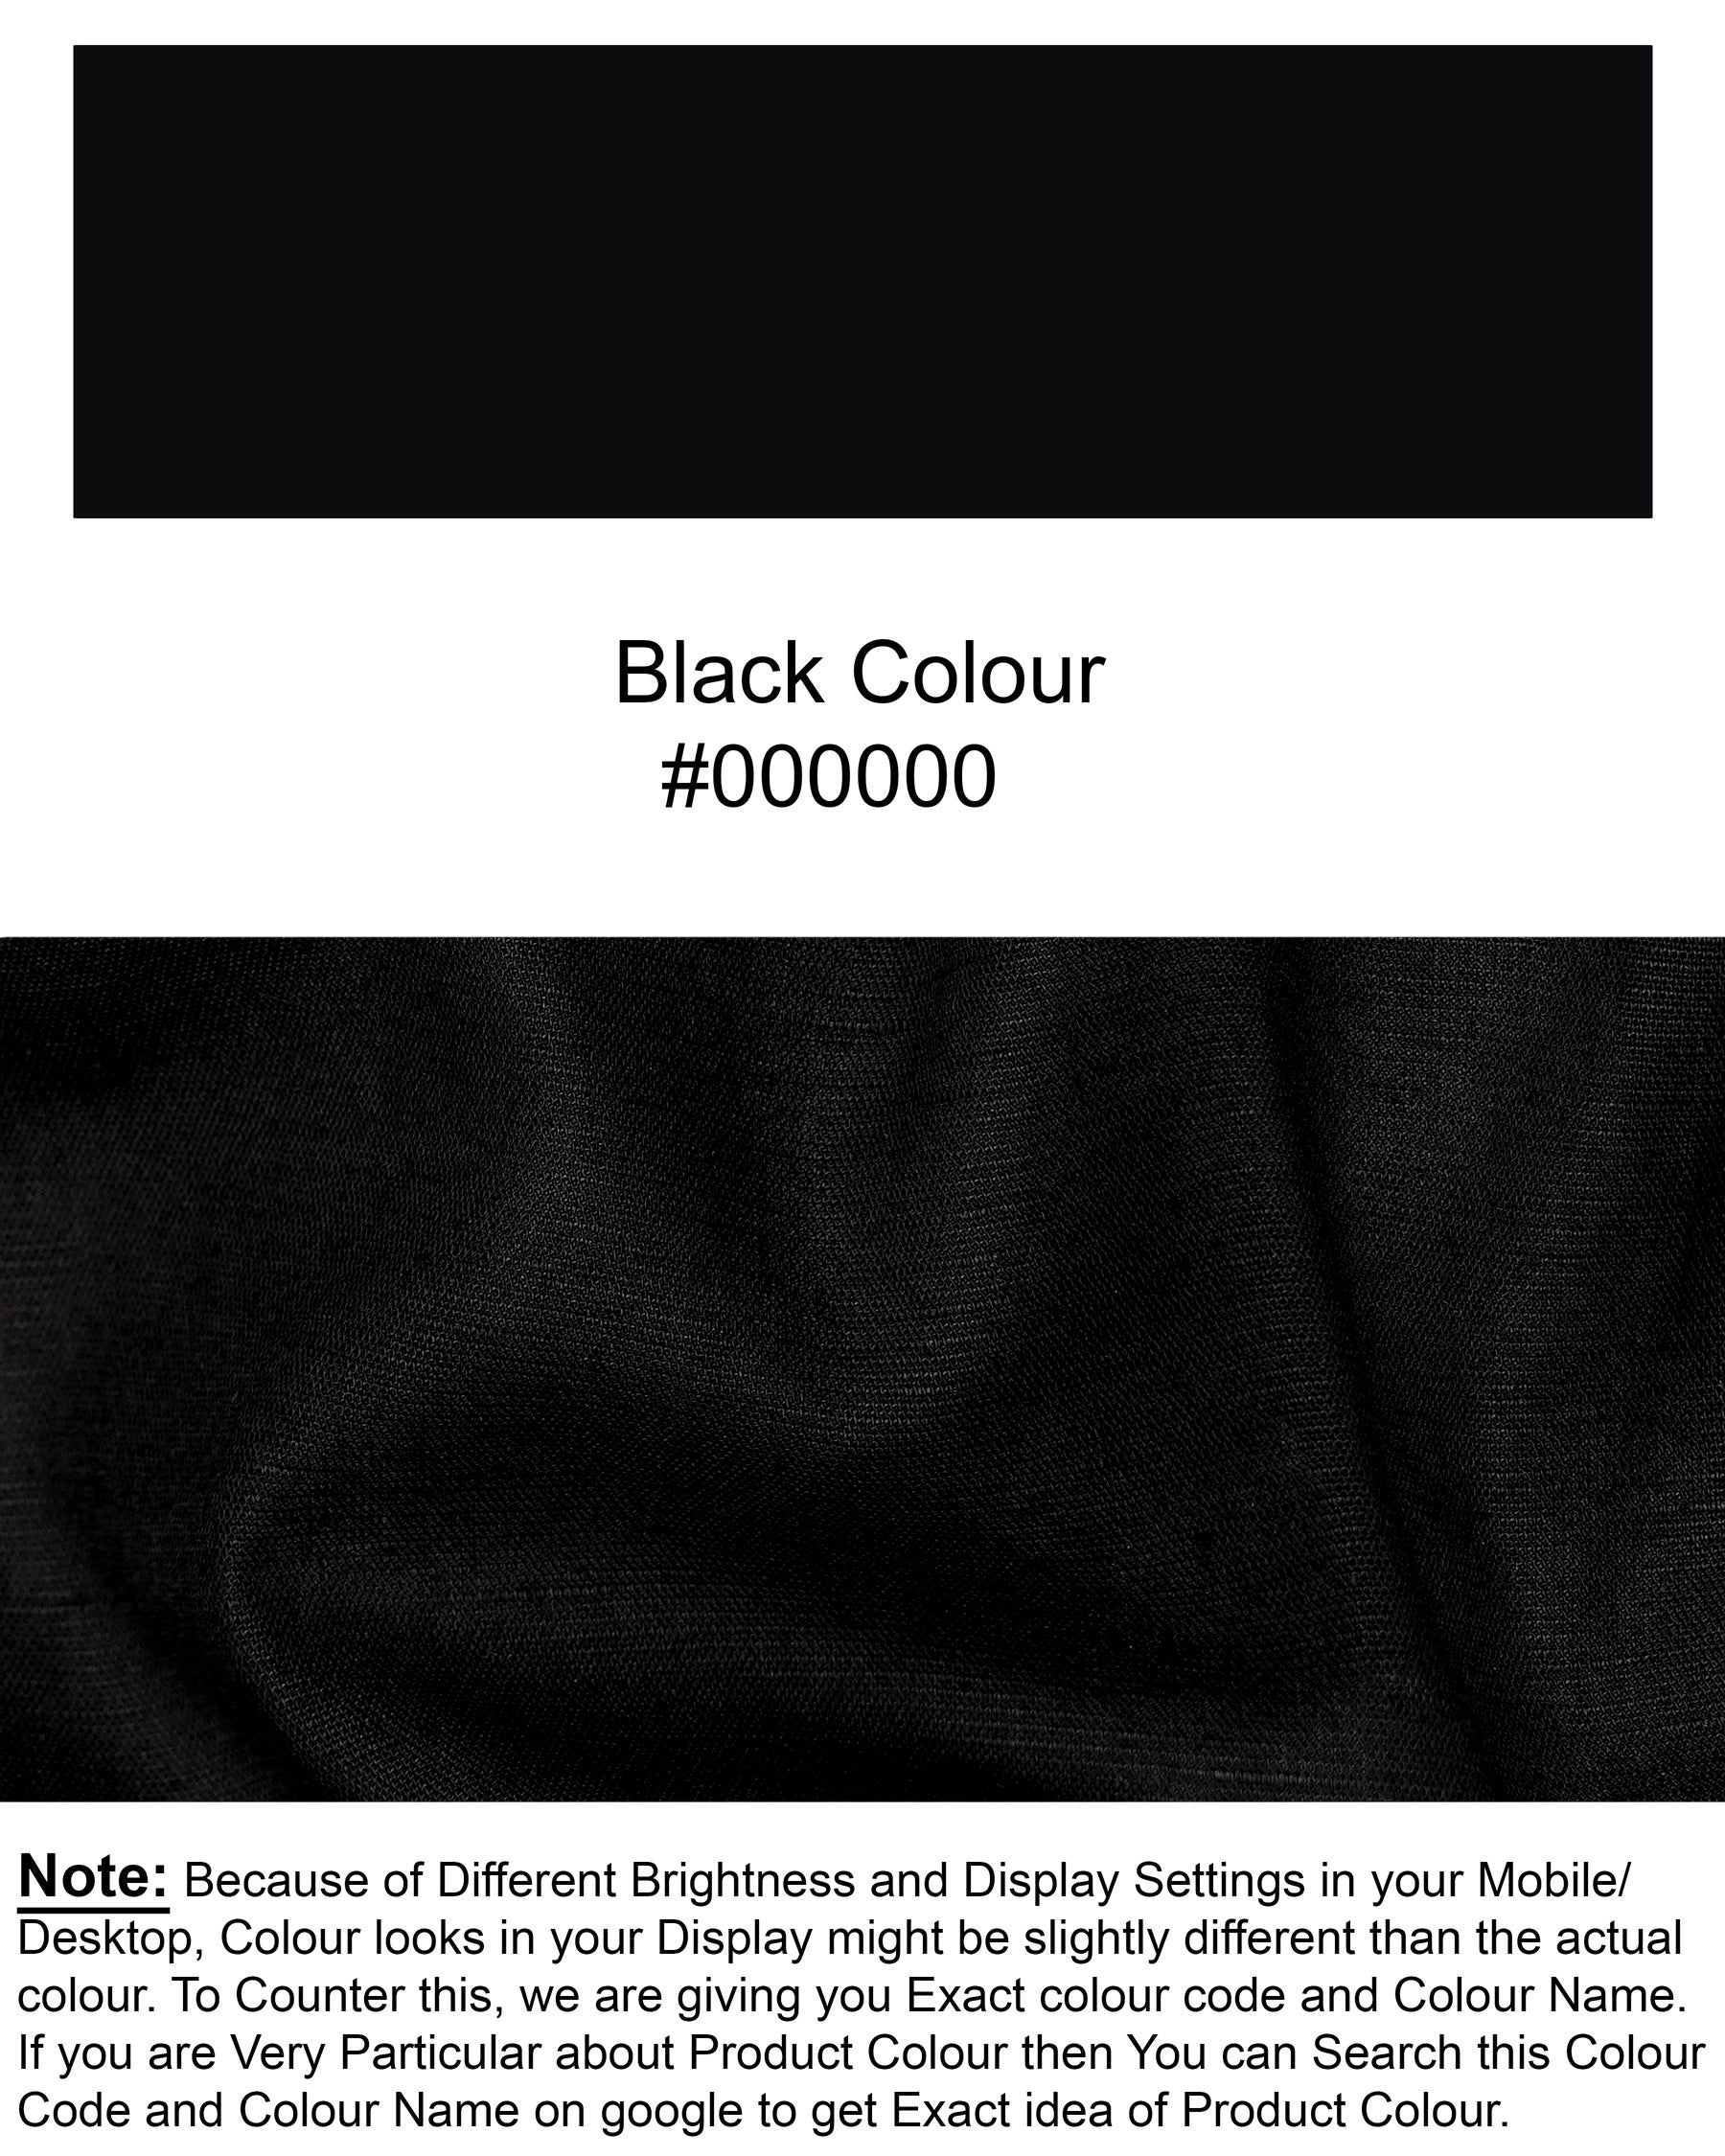 Jade Black Indian Kurta Style Luxurious Linen Shirt 2673KS-38, 2673KS-H-38, 2673KS-39, 2673KS-H-39, 2673KS-40, 2673KS-H-40, 2673KS-42, 2673KS-H-42, 2673KS-44, 2673KS-H-44, 2673KS-46, 2673KS-H-46, 2673KS-48, 2673KS-H-48, 2673KS-50, 2673KS-H-50, 2673KS-52, 2673KS-H-52